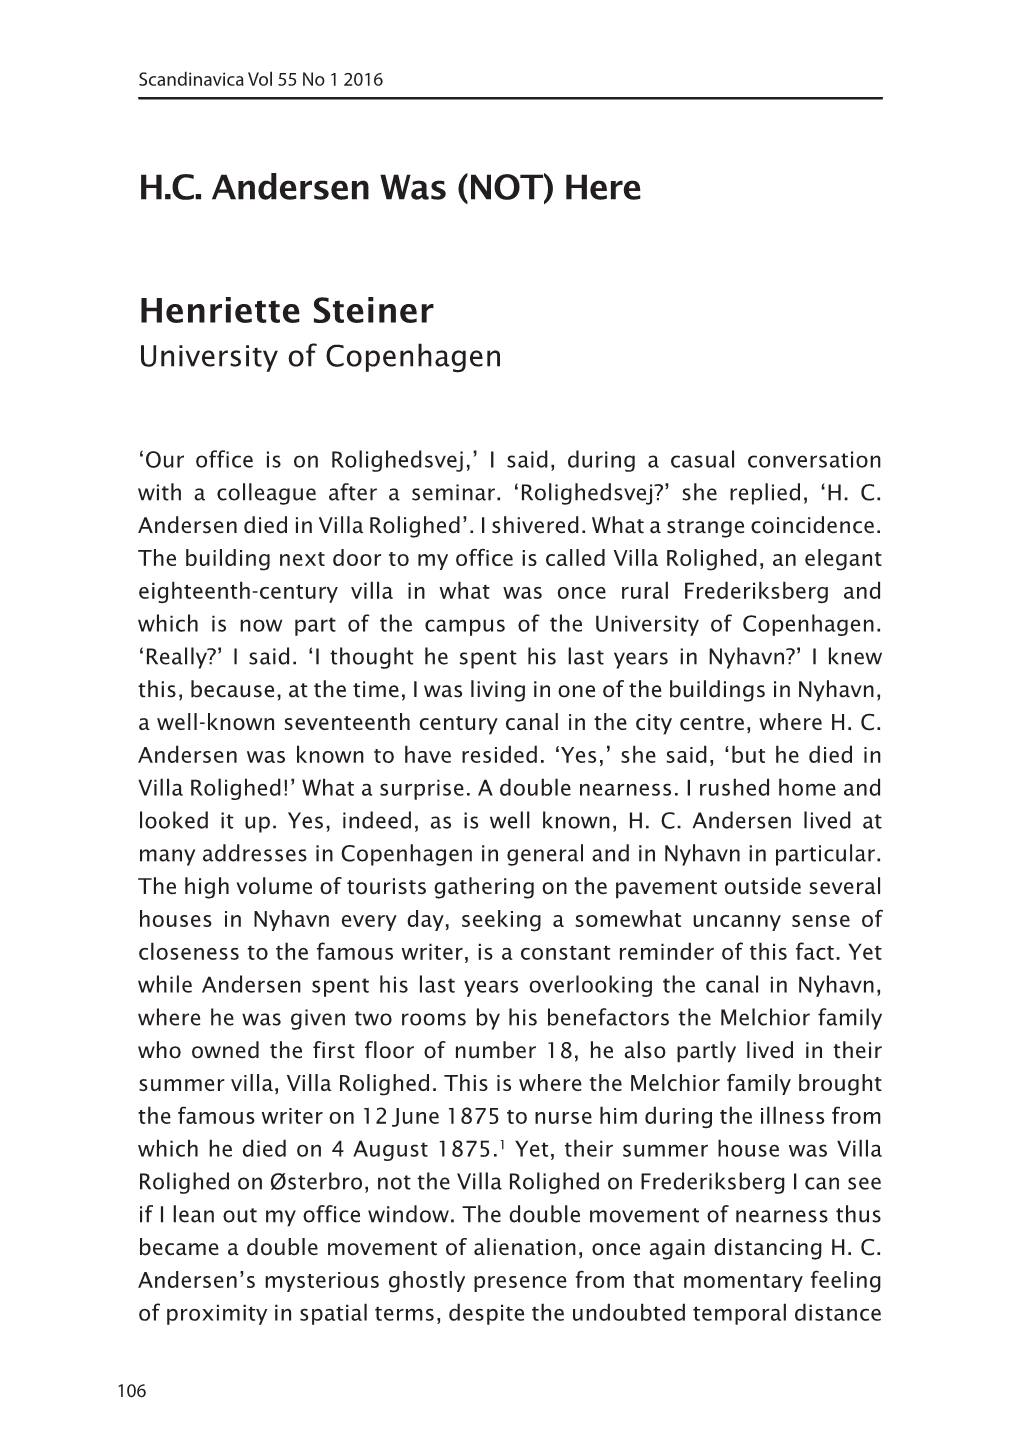 H.C. Andersen Was (NOT) Here Henriette Steiner